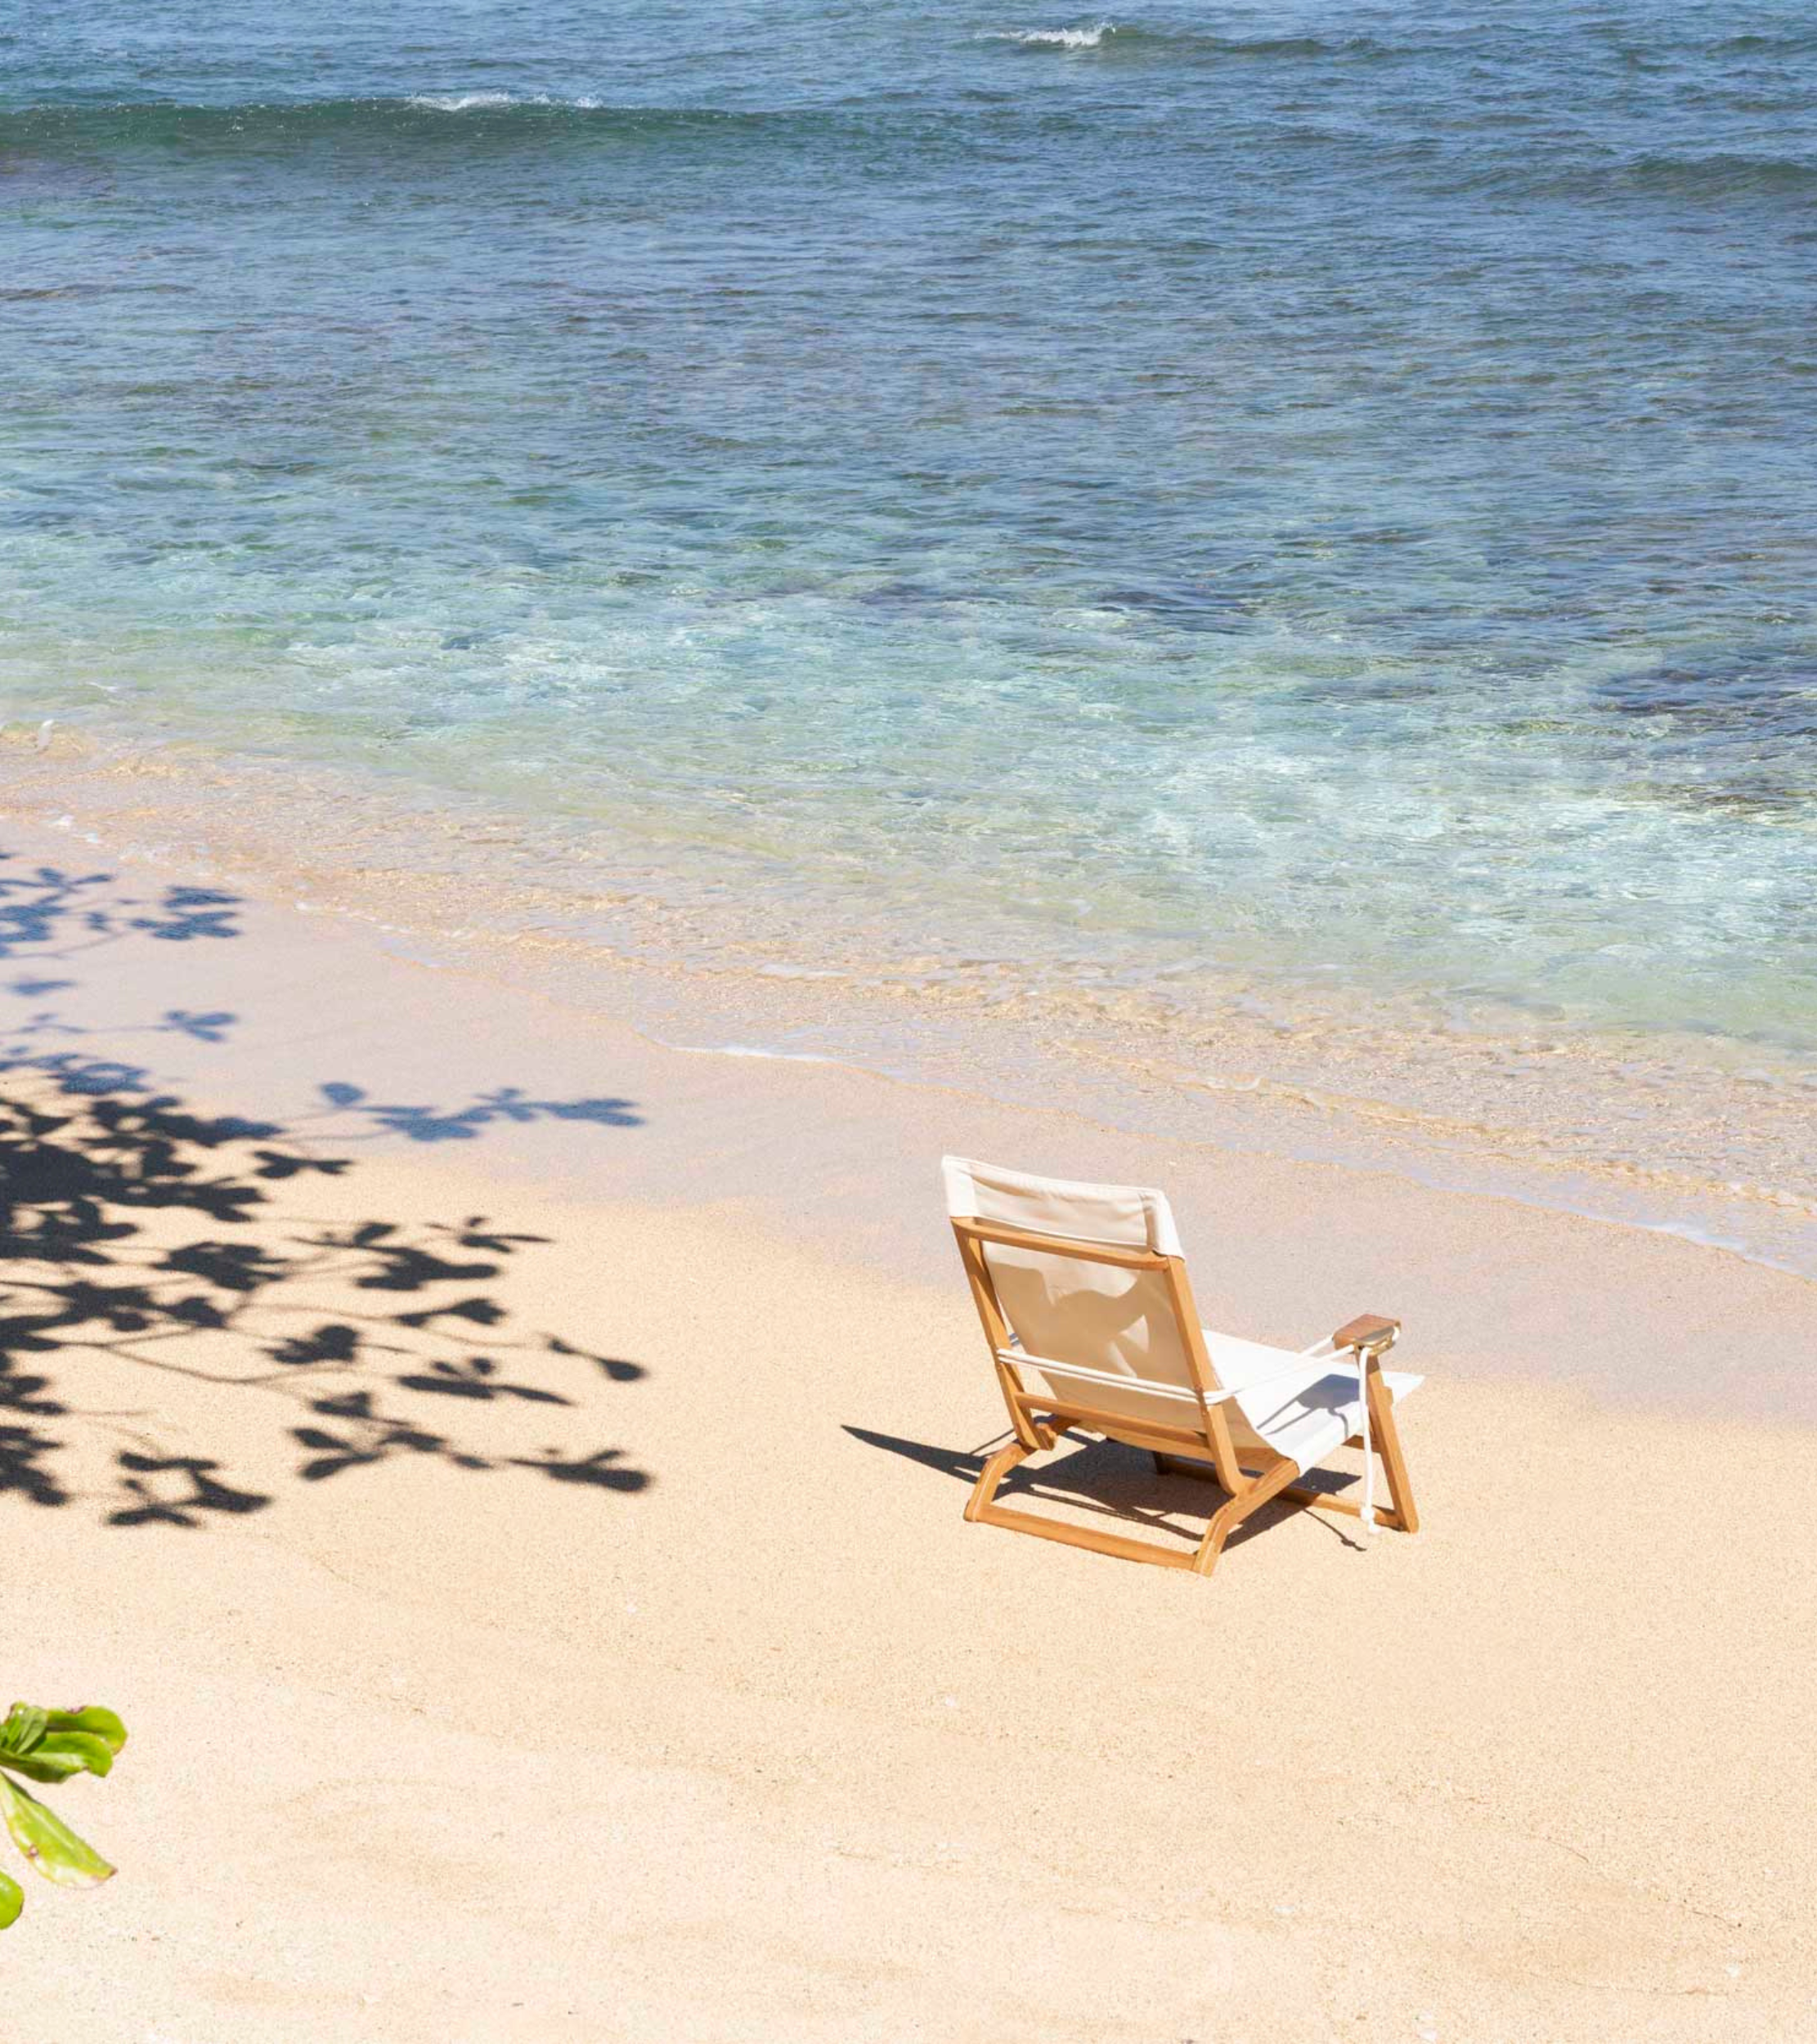 The Shorebird Beach Chair on the beach in Hawaii next to the ocean